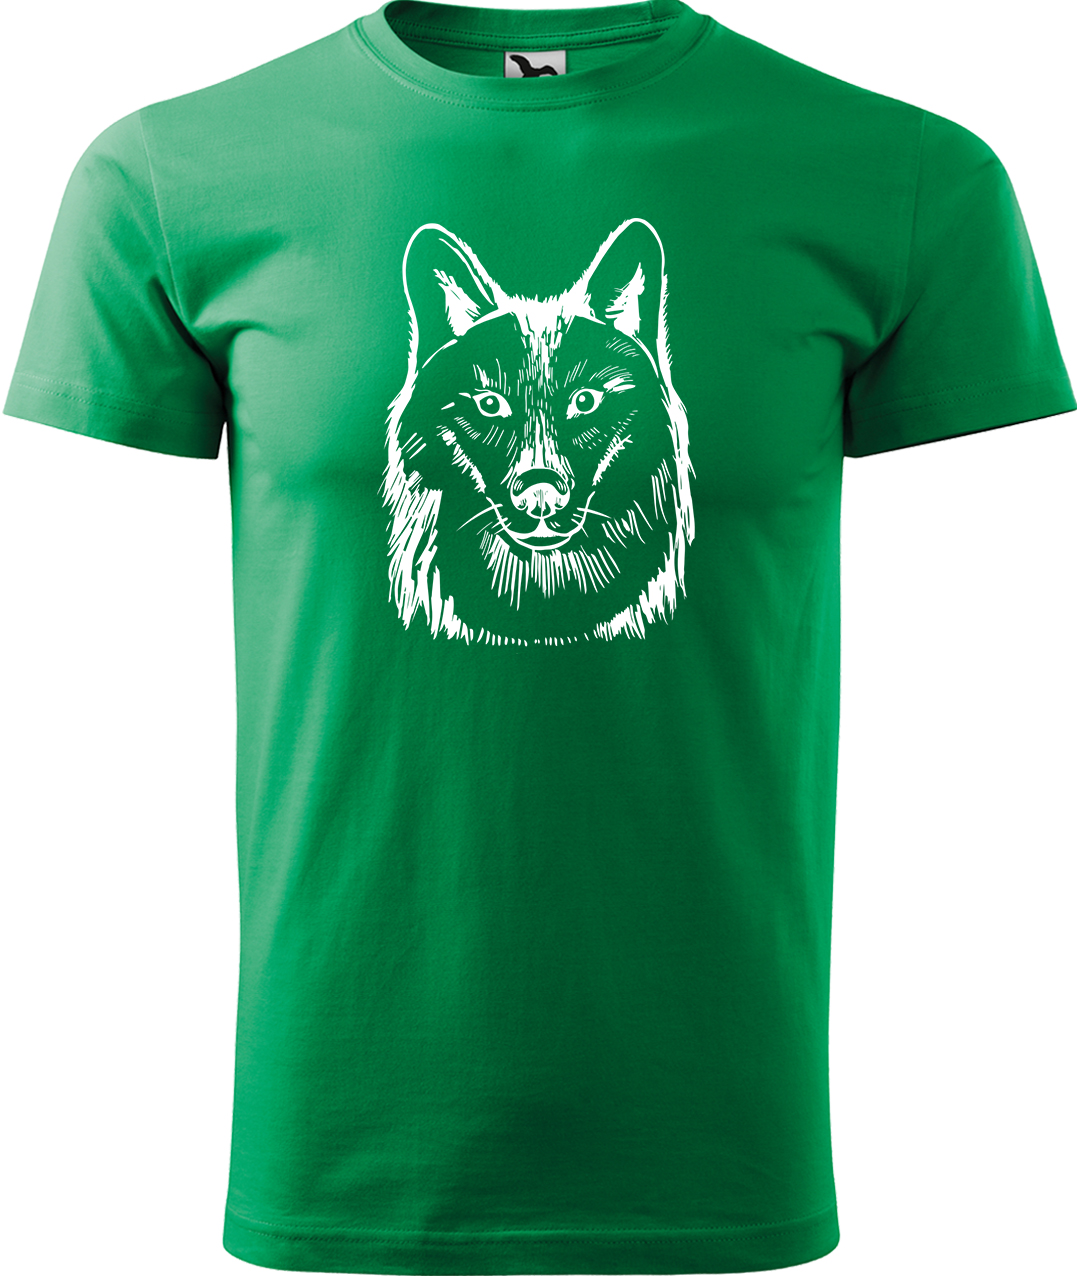 Pánské tričko s vlkem - Kresba vlka Velikost: L, Barva: Středně zelená (16), Střih: pánský